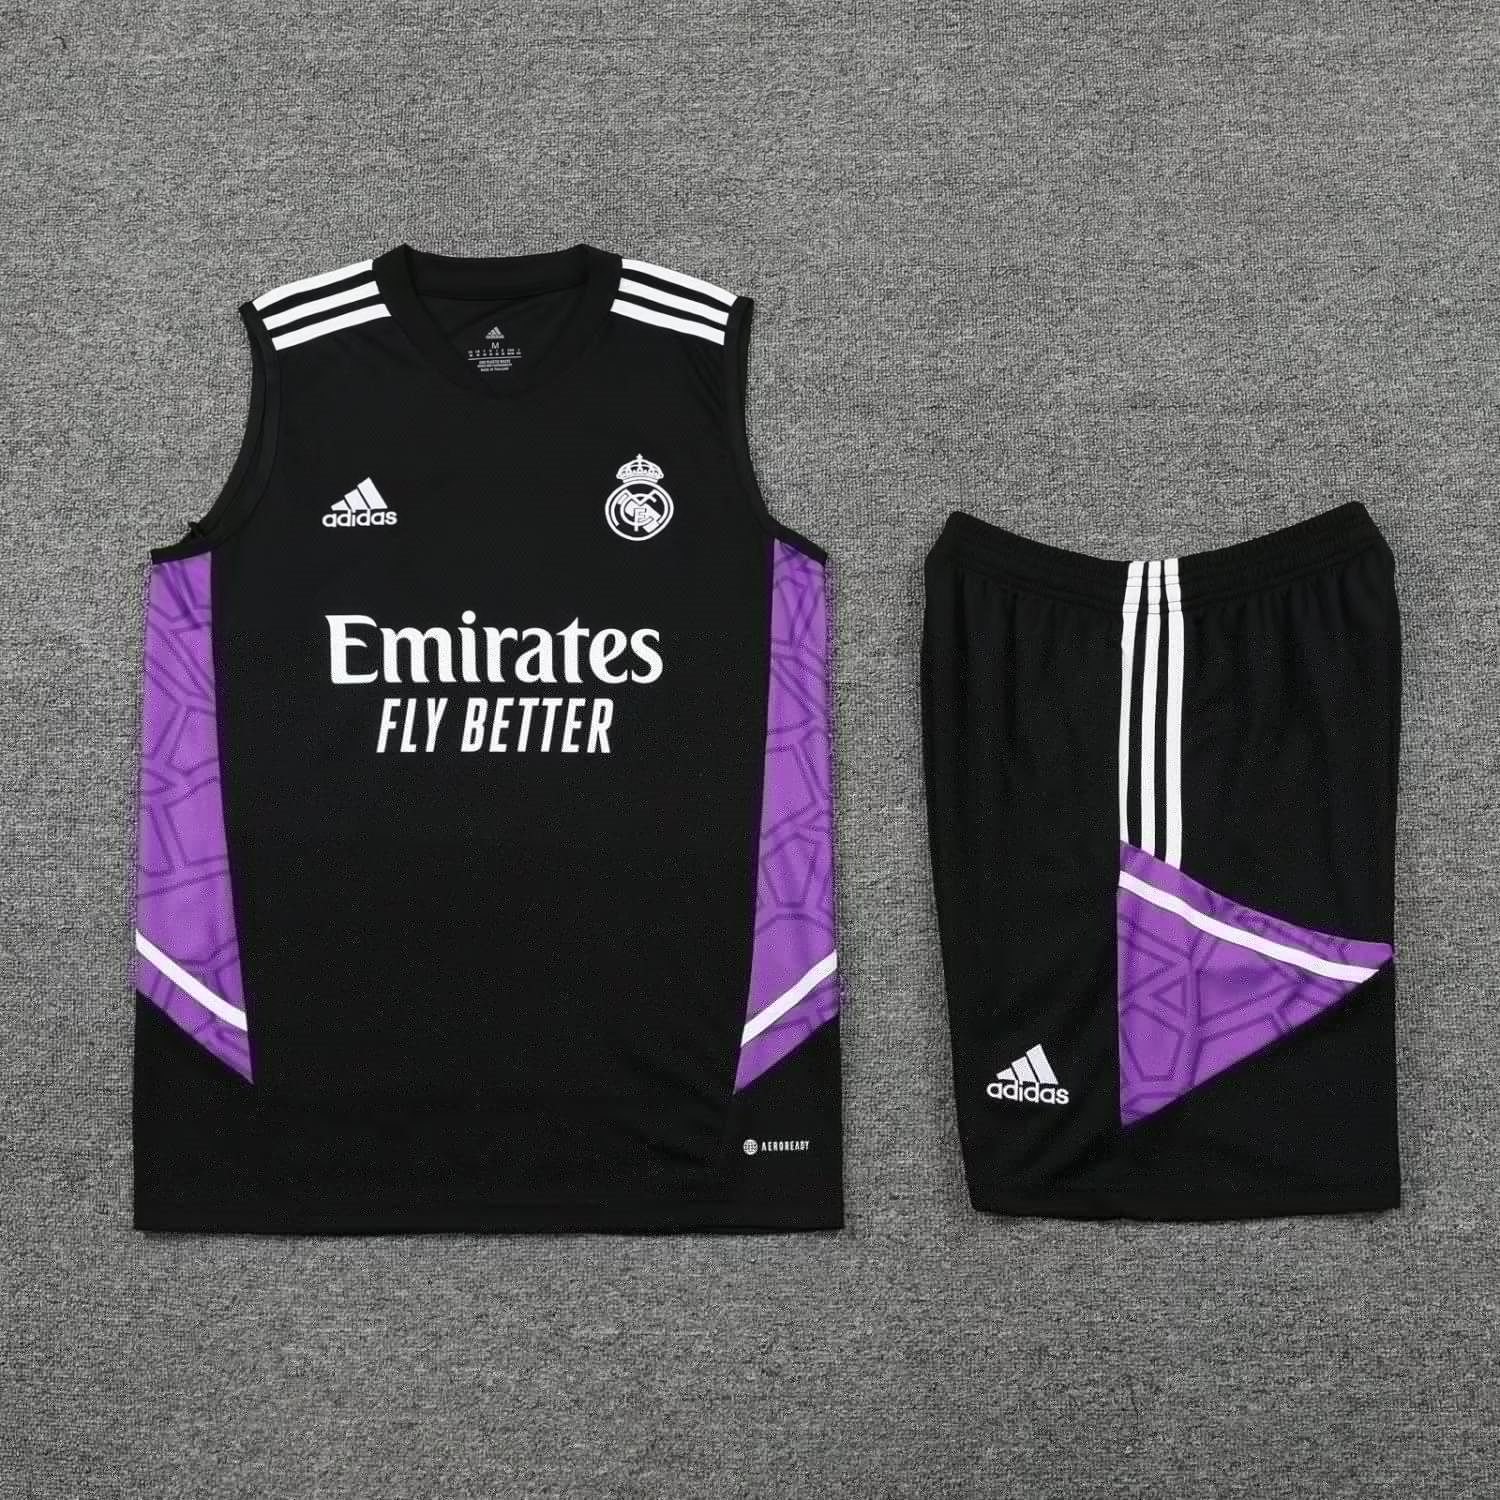 22-23 Real Madrid Black Soccer Football Training Kit (Singlet + Shorts) Man